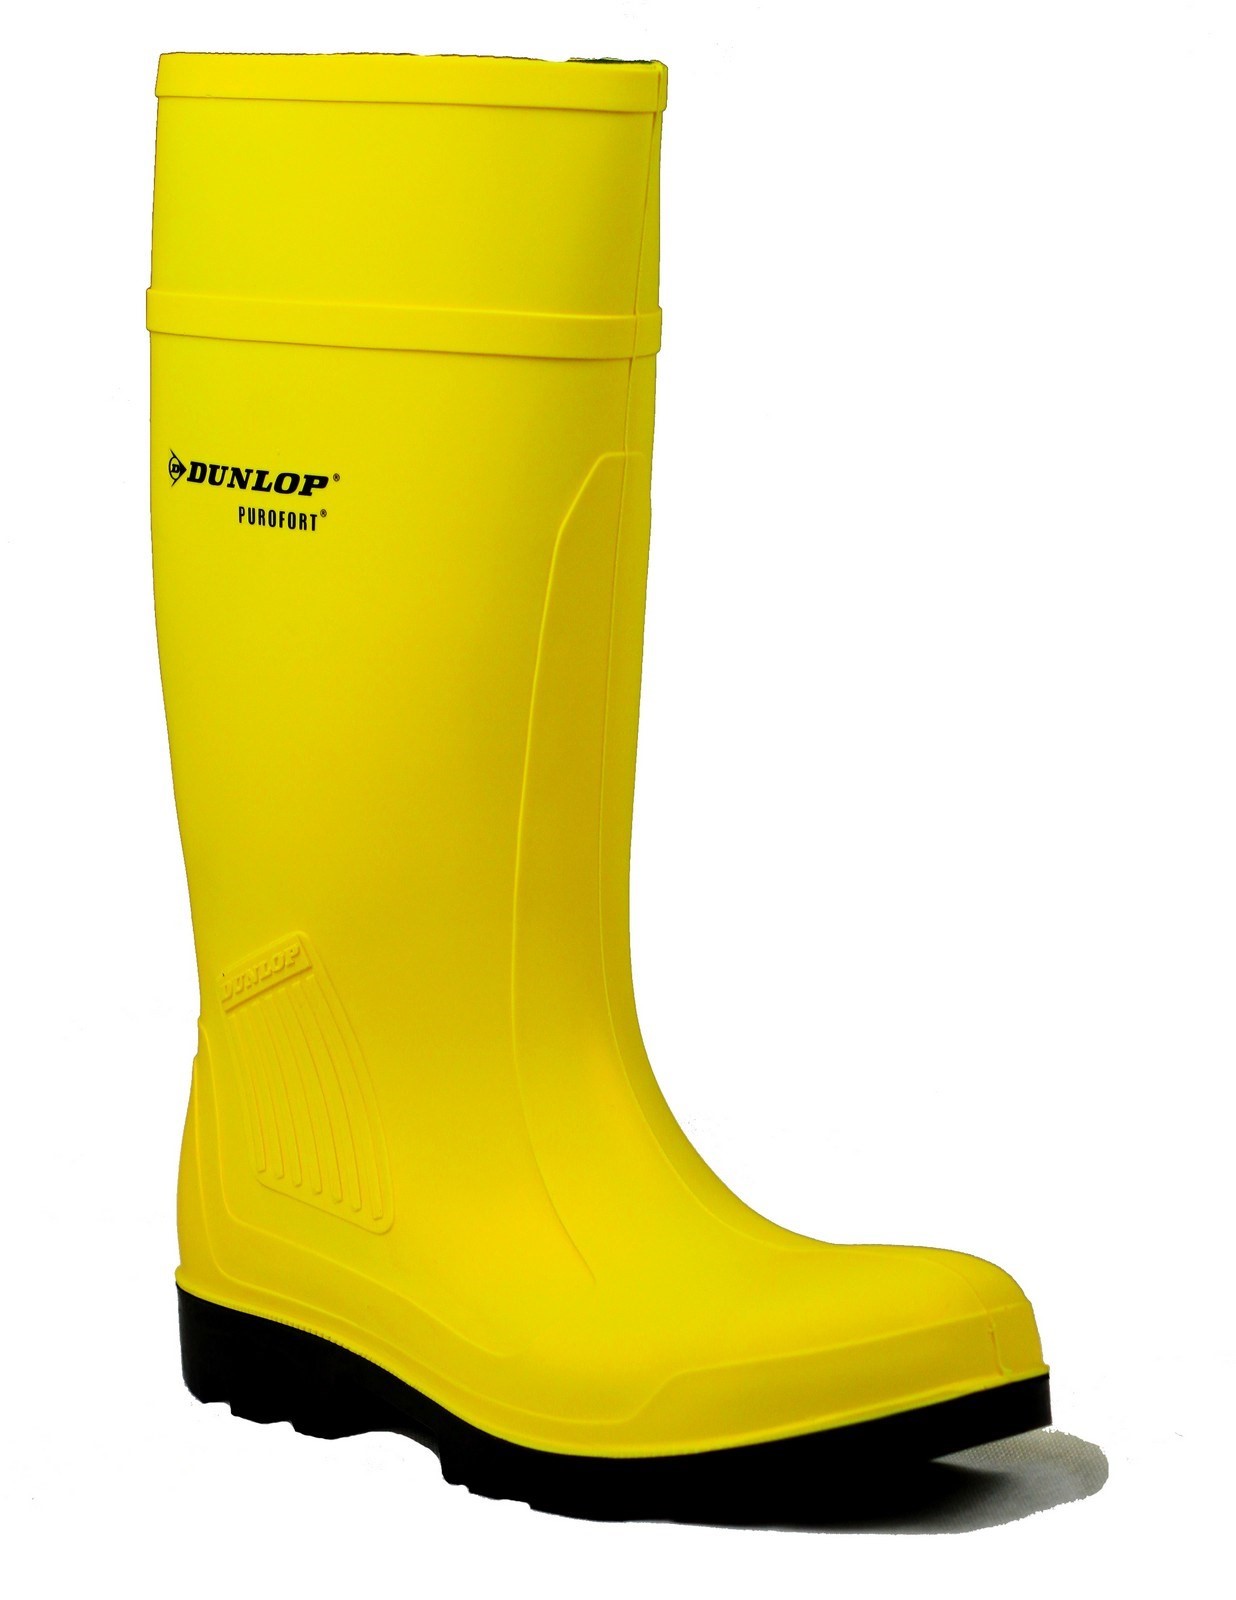 Dunlop Purofort Full Safety Wellies Wellington Work Boots Green Waterproof 4-13 